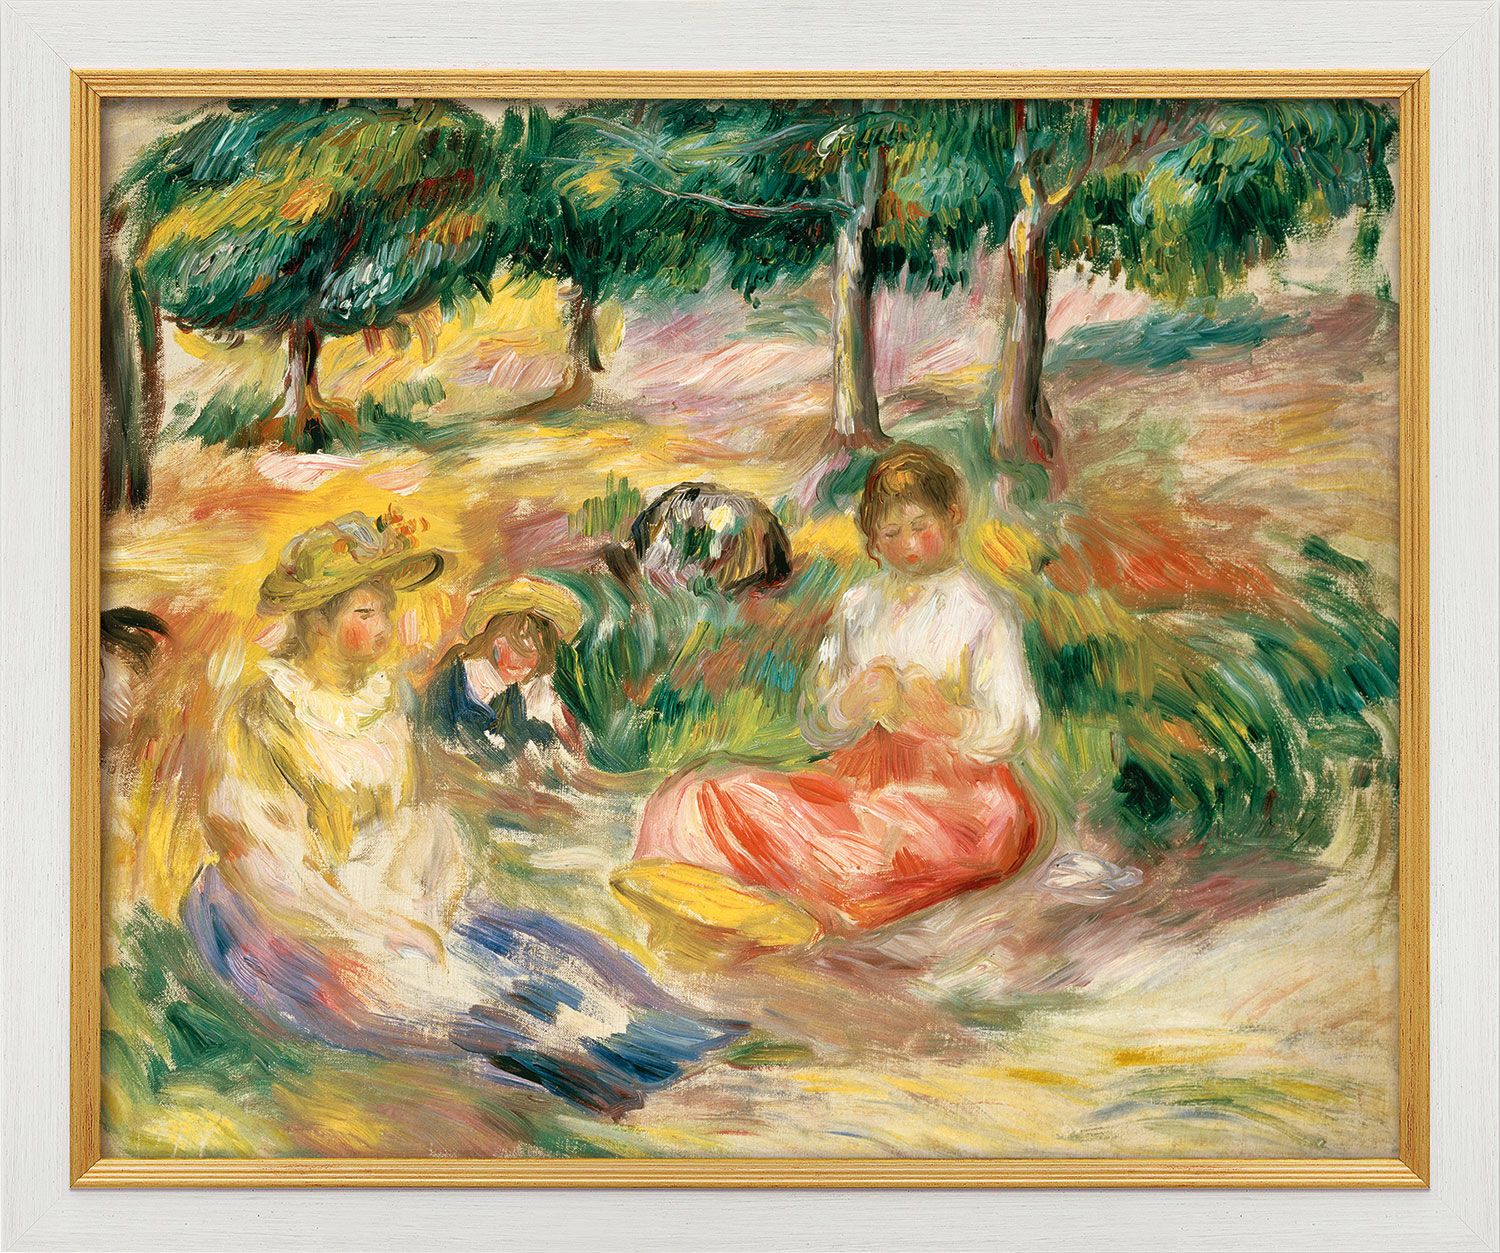 Tableau "Trois jeunes filles assises dans l'herbe" (1896-97), version encadrée blanc et or von Auguste Renoir